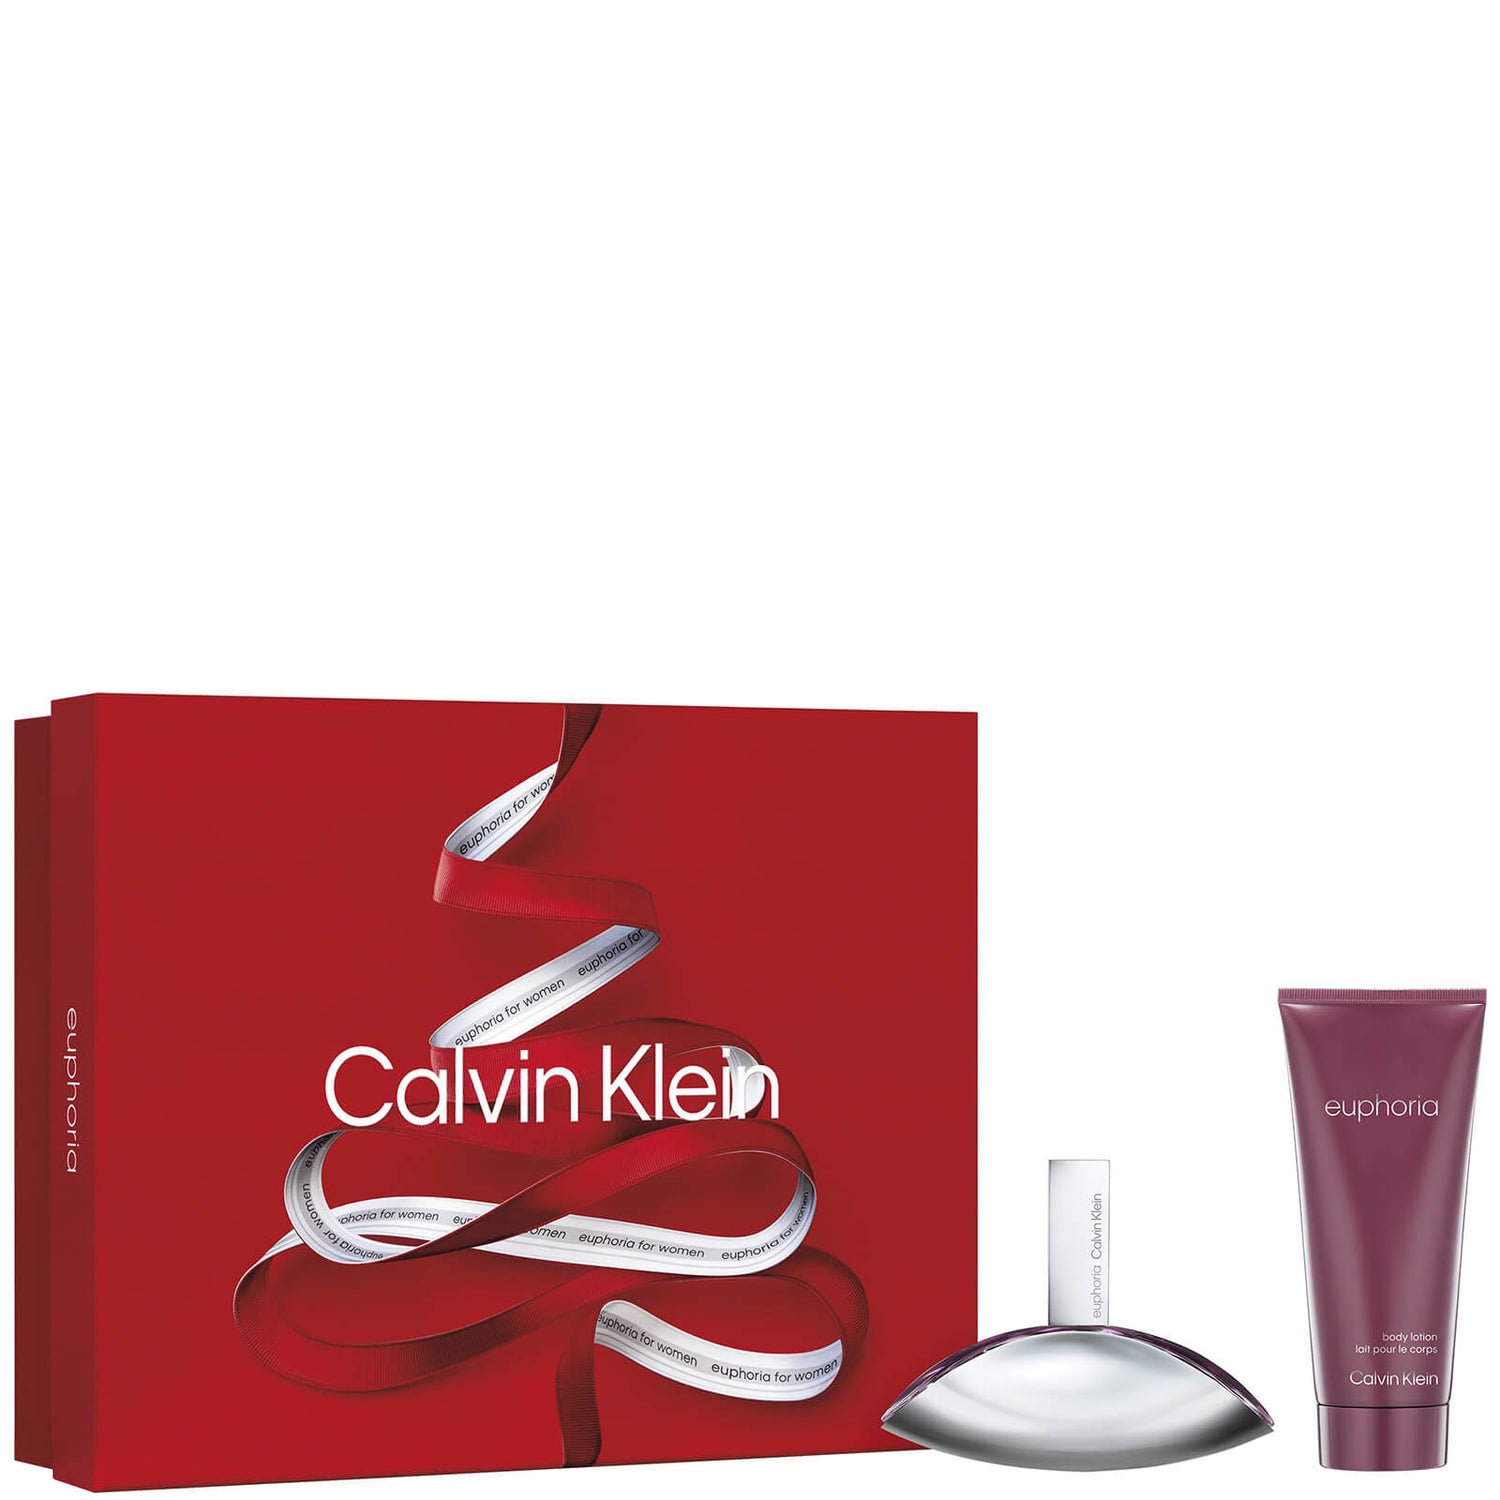 Calvin Klein Euphoria for Women Eau de Parfum 50ml Gift Set (Worth £62.00)